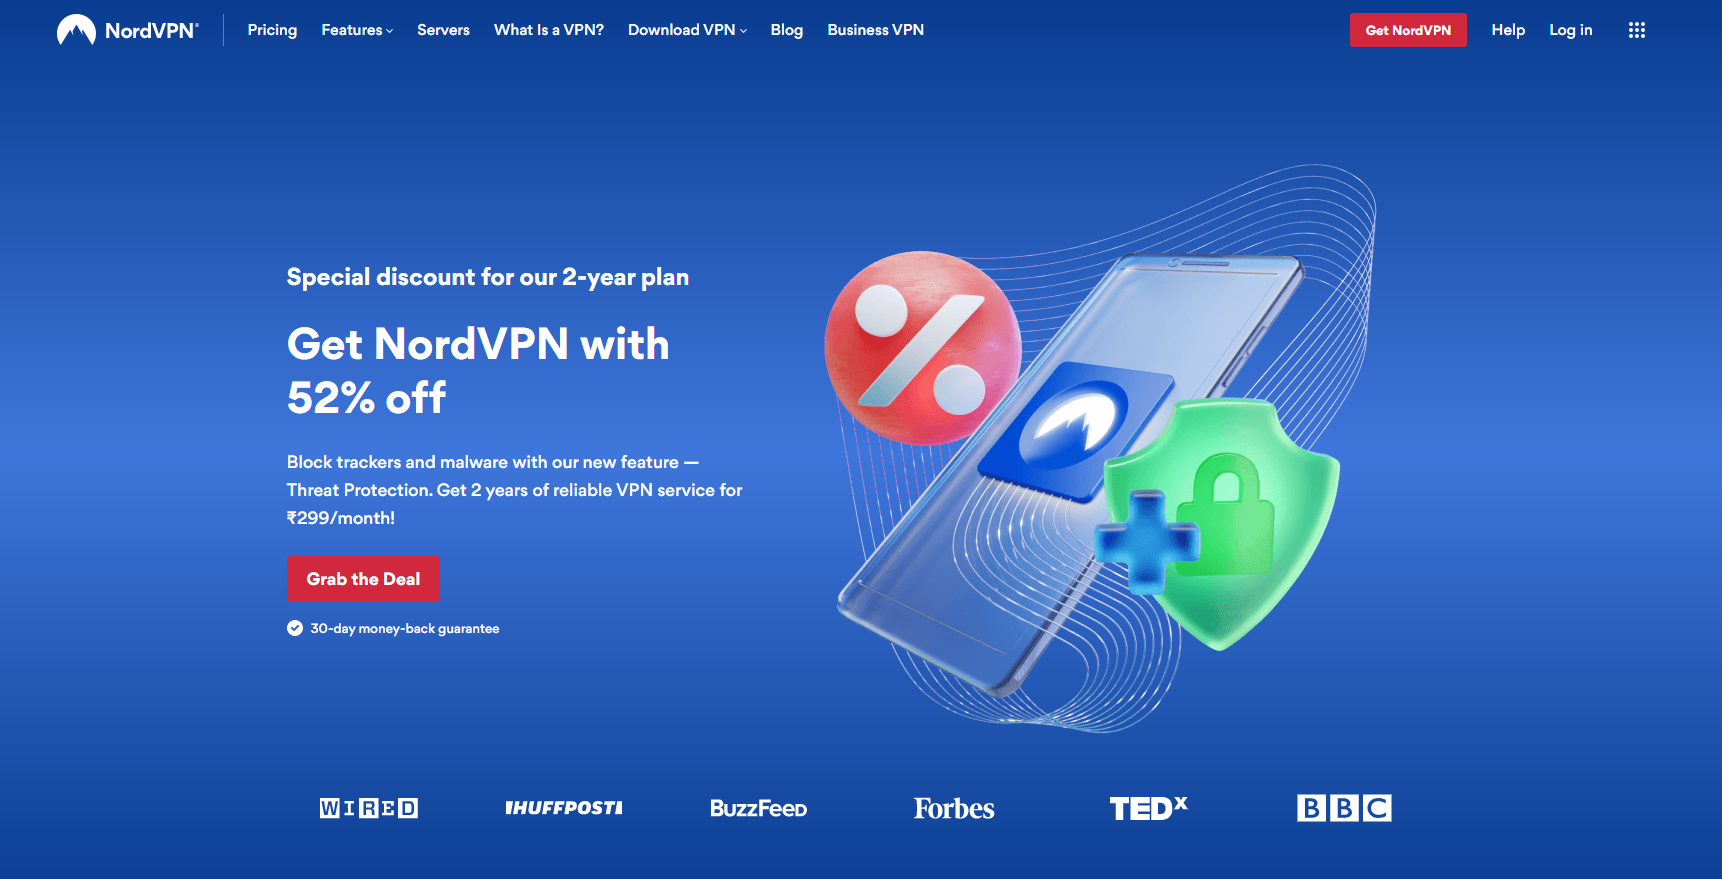 NordVPN Overview - Best Antivirus With VPN